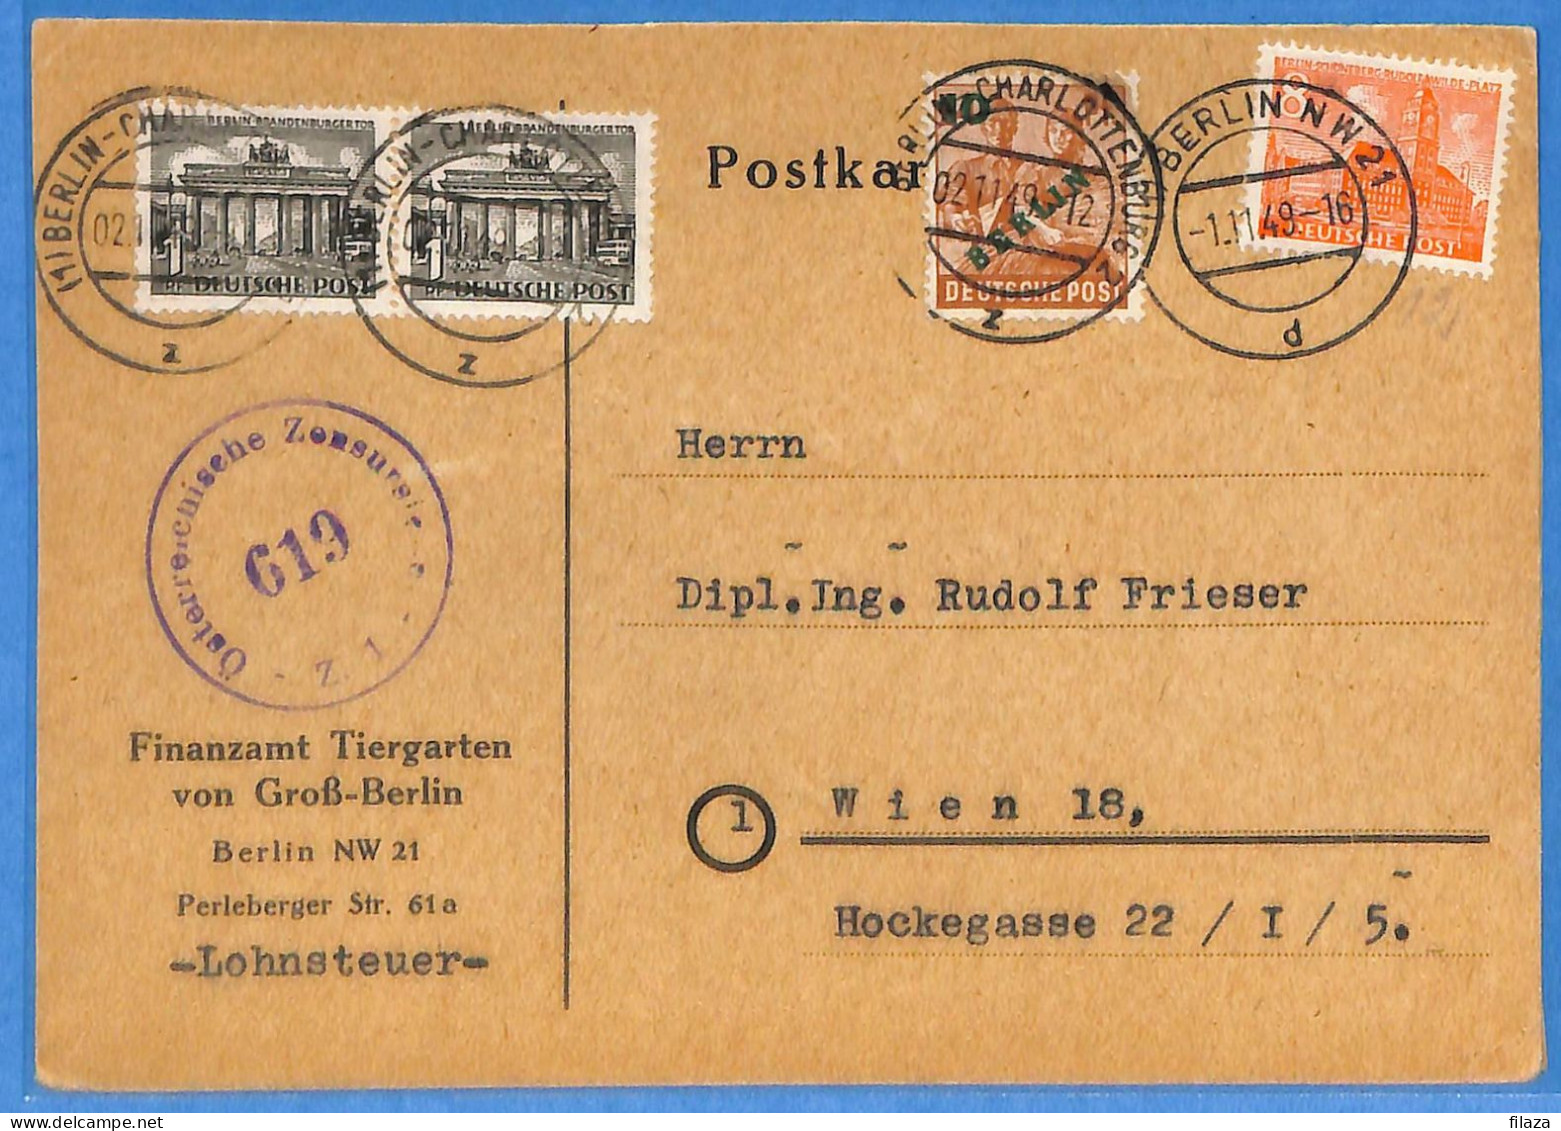 Berlin West 1949 - Carte Postale De Berlin - G33035 - Covers & Documents